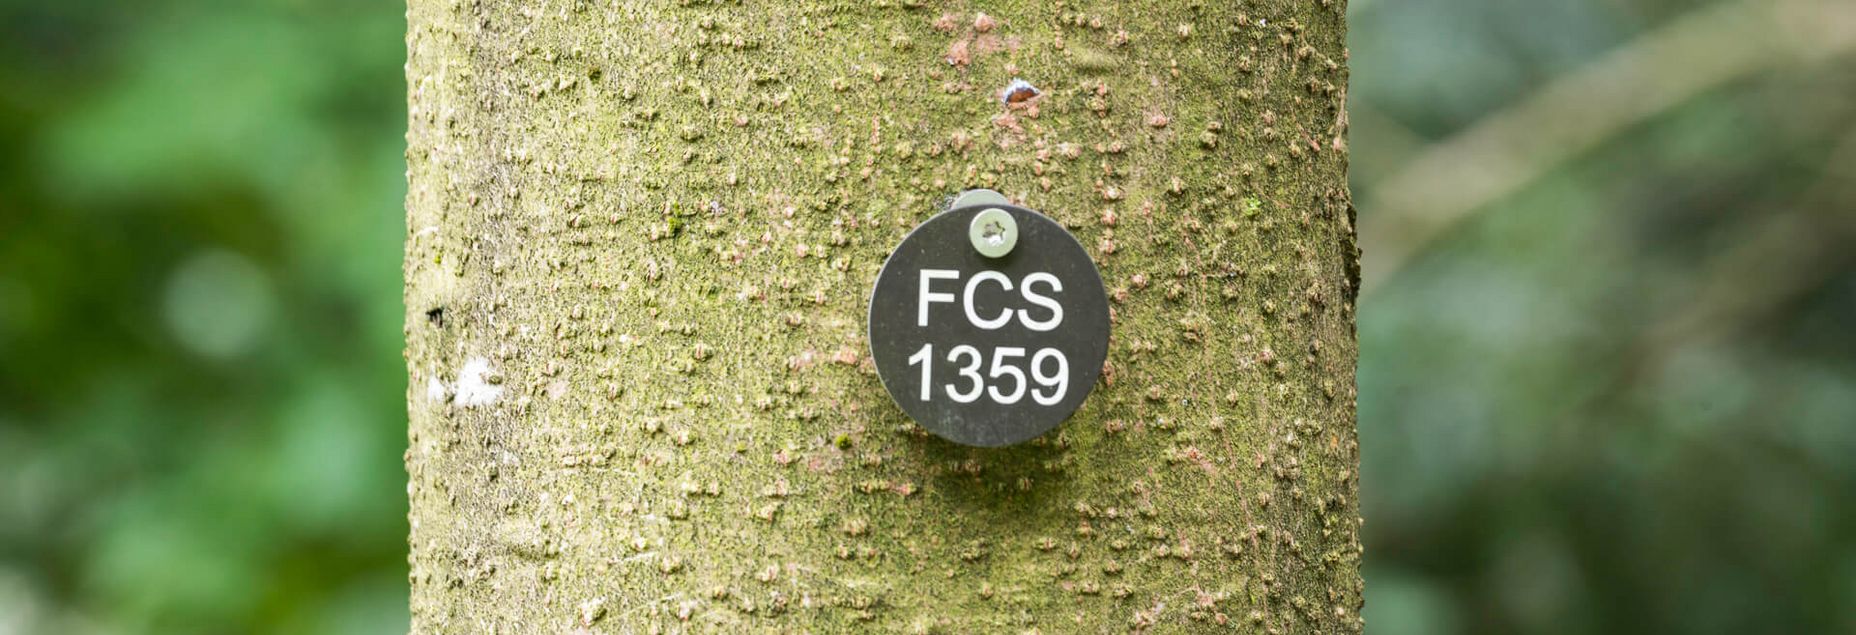 FCS 1359 - Plakette